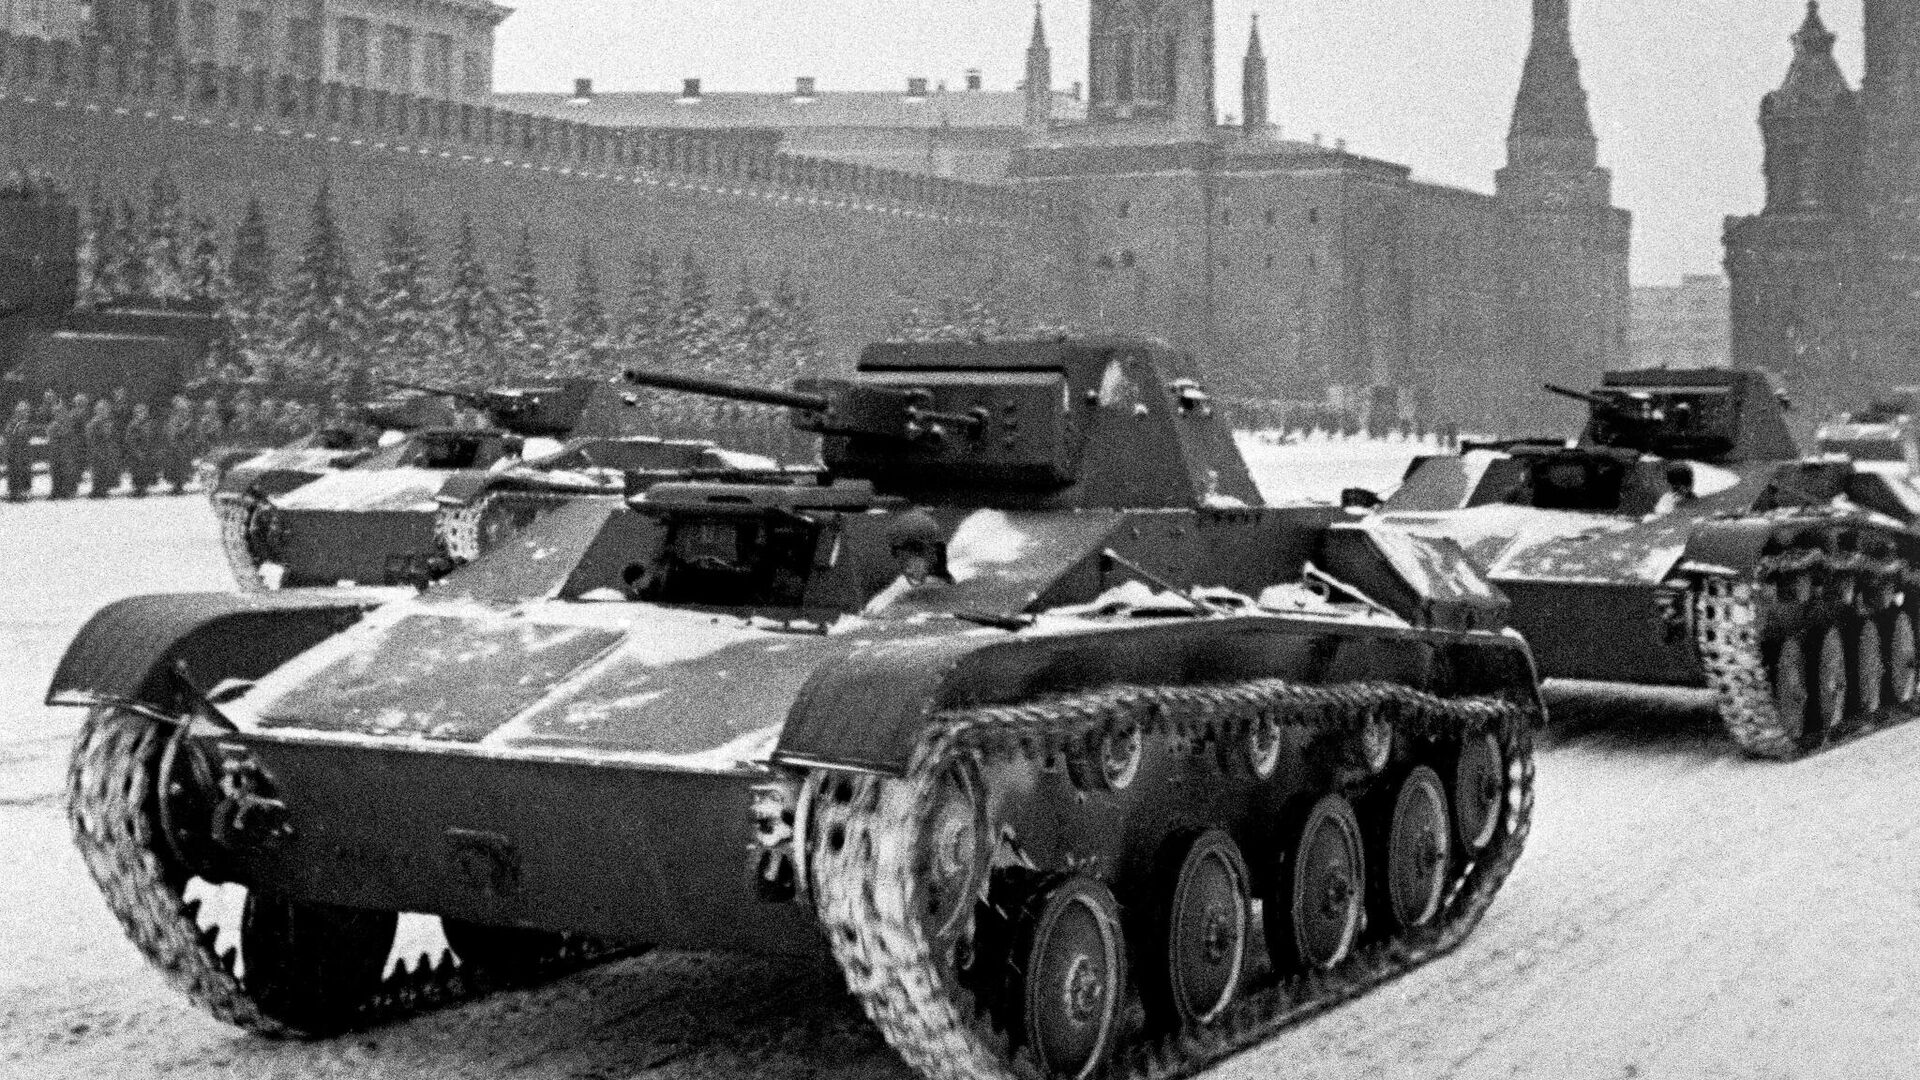 парад 7 ноября 1941 года в москве на красной площади